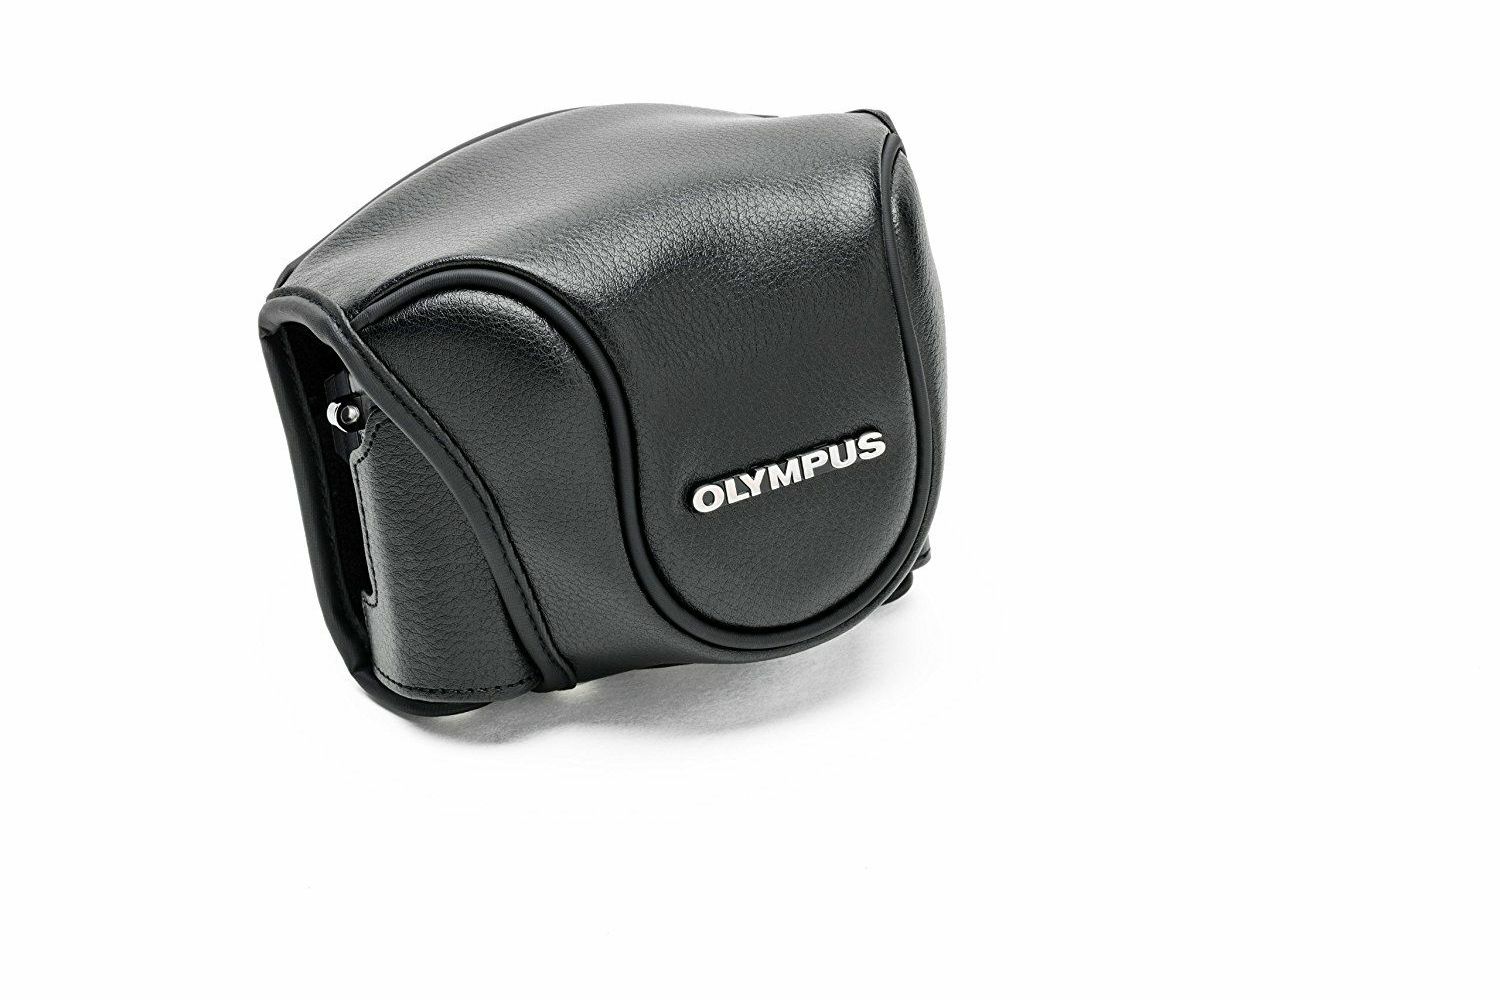 Olympus CSCH-118 Full Cover Leather Jacket Black for Stylus 1 torbica za digitalni kompaktni fotoaparat V600079BW000